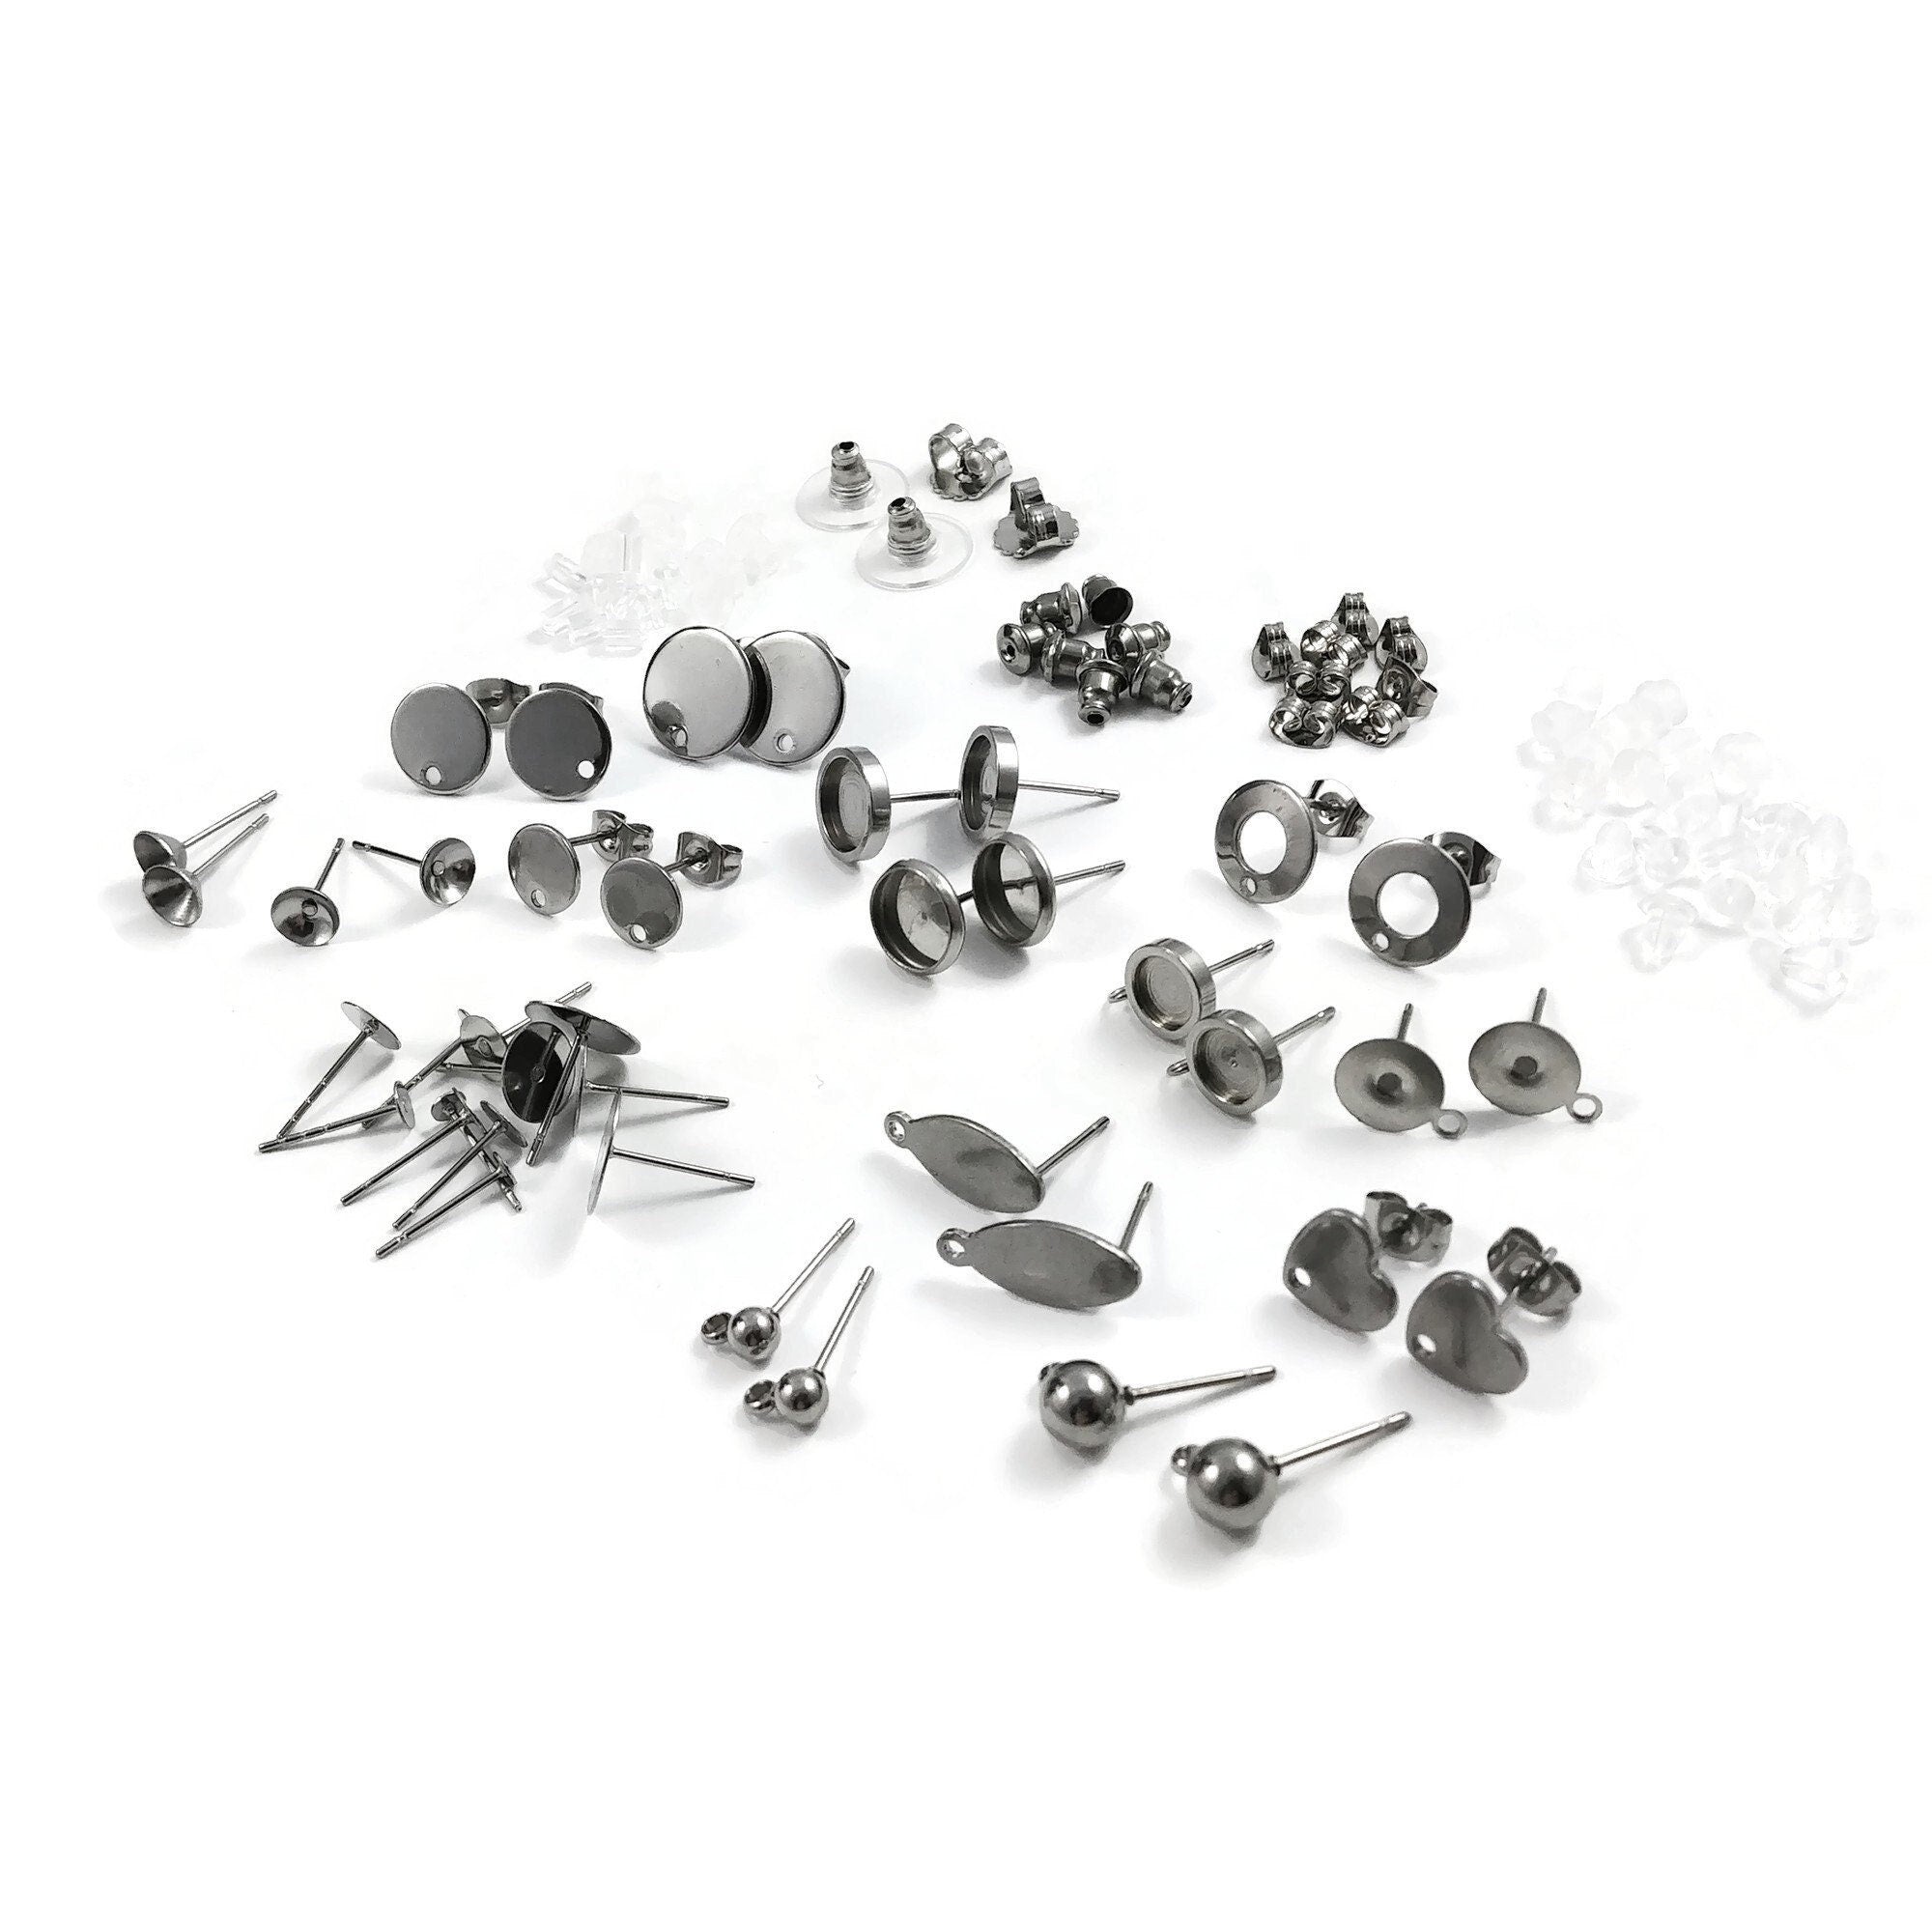 Earring hooks, Stainless steel earwire, Tarnish free jewelry making